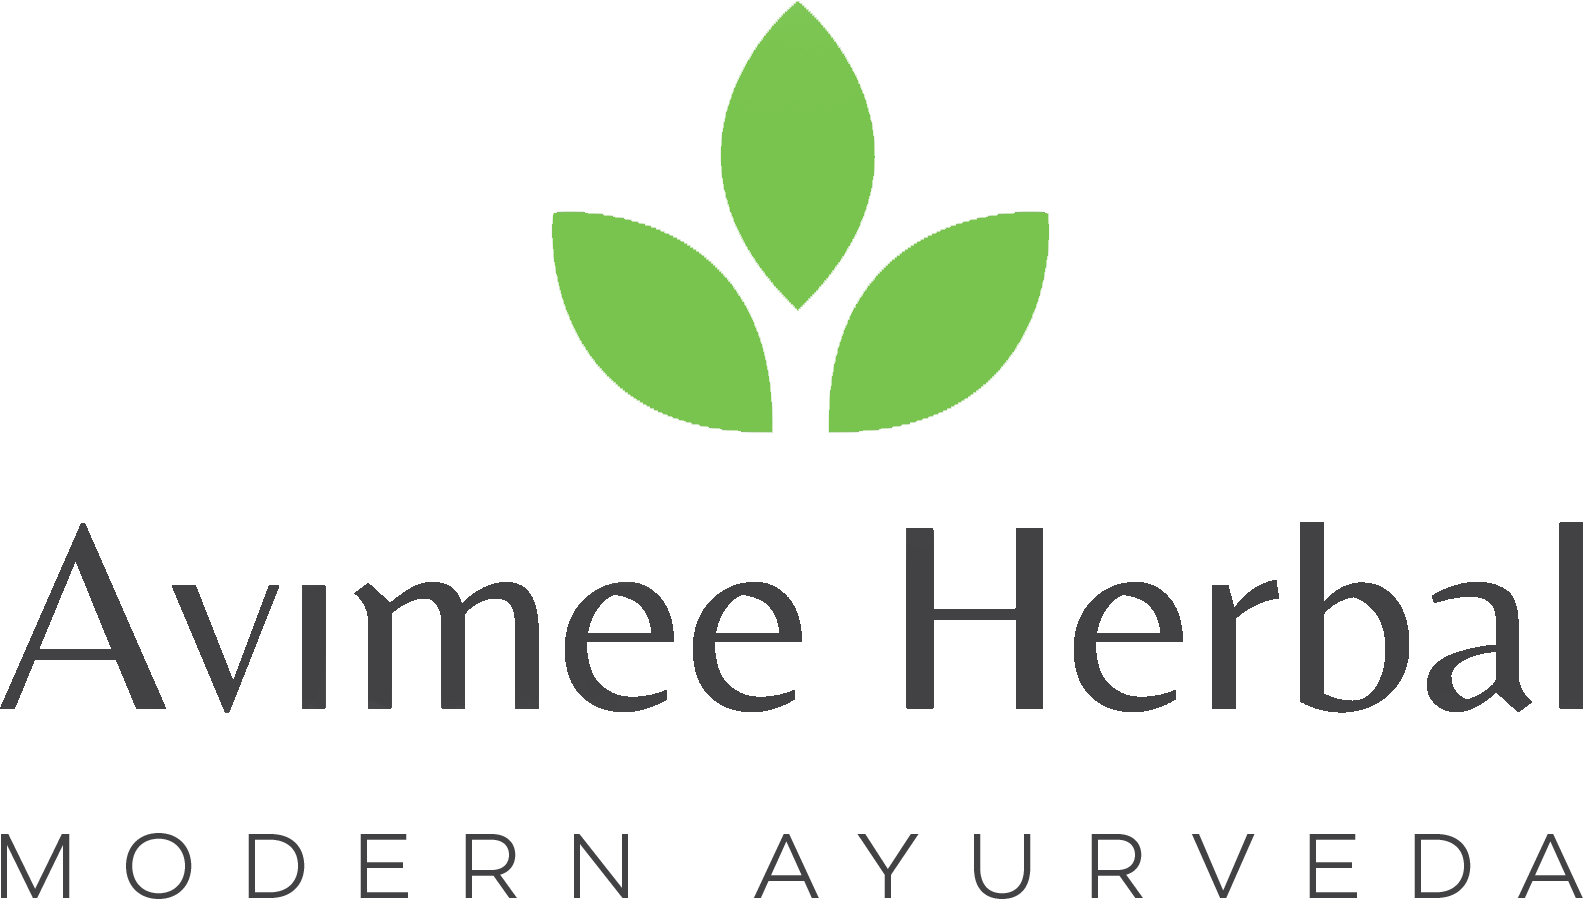 Avimee Herbal